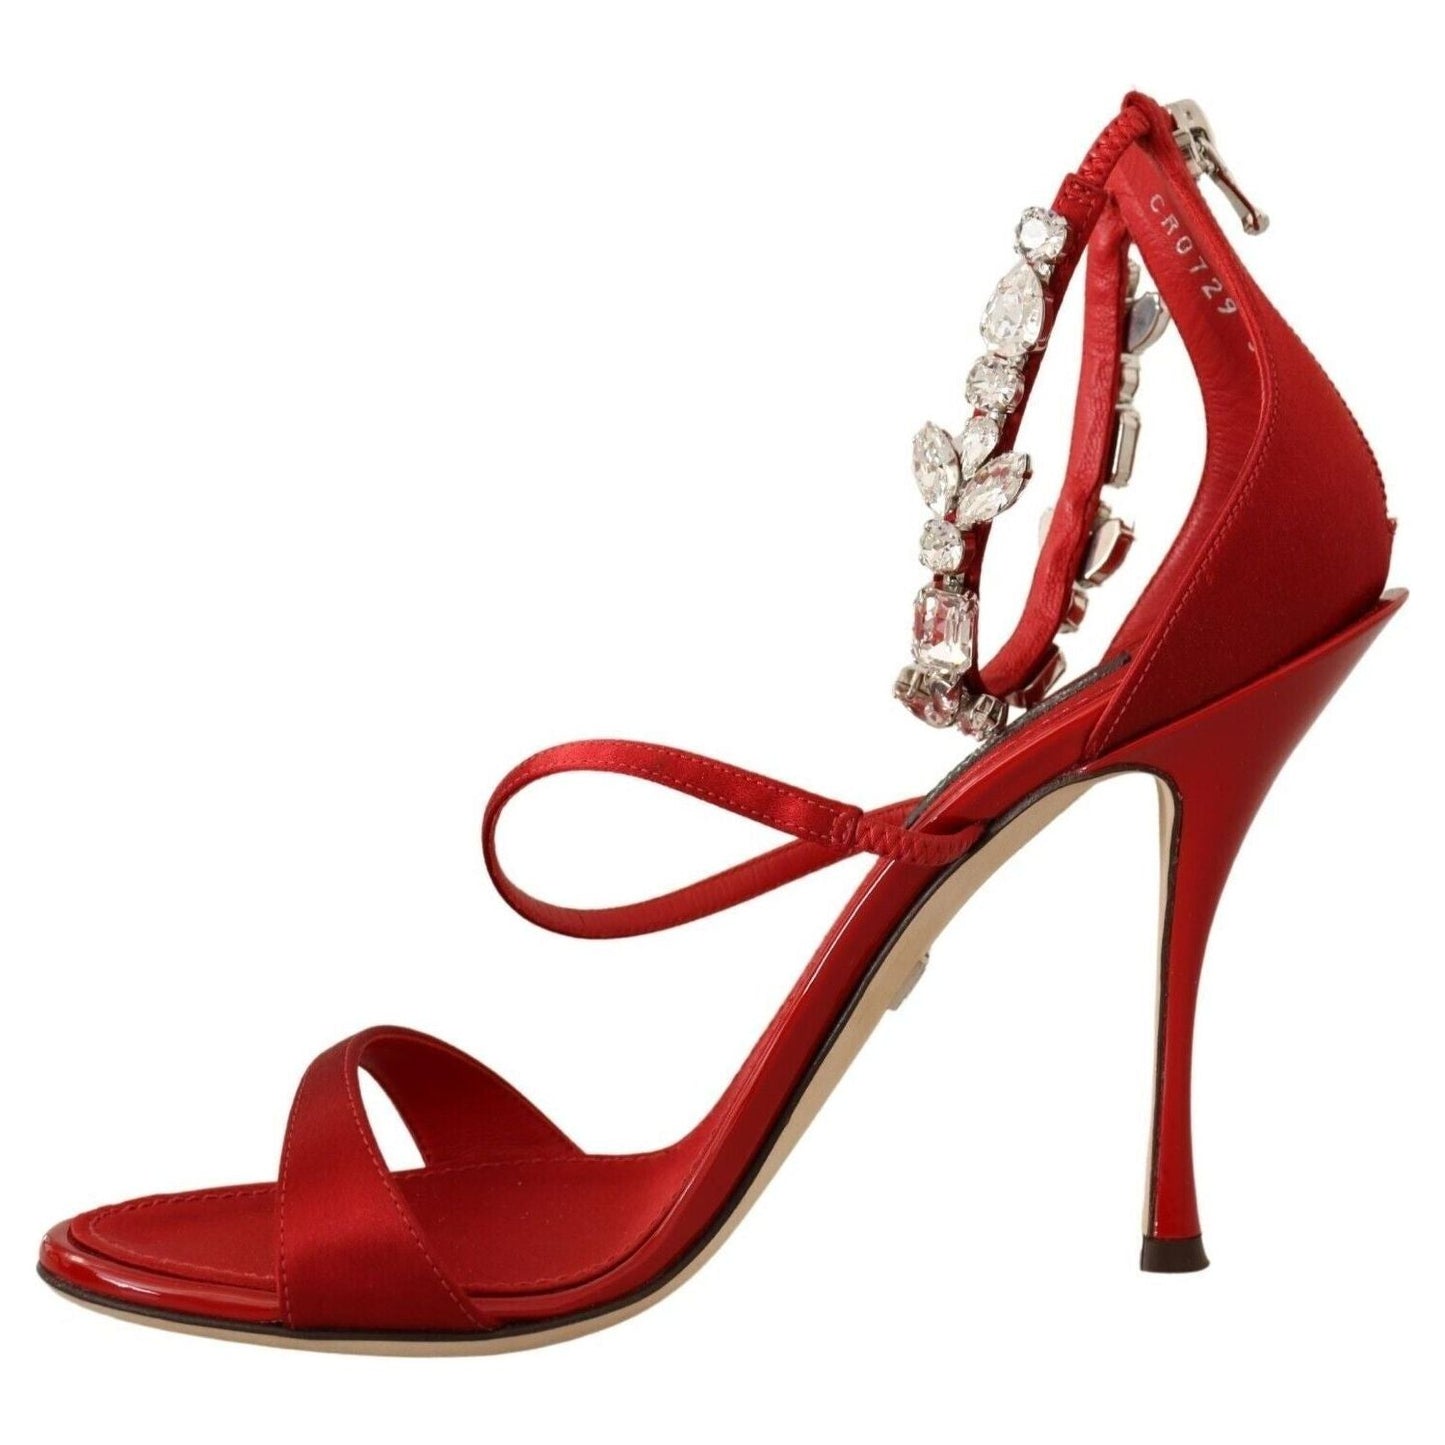 Dolce & Gabbana Red Crystal-Embellished Heel Sandals red-satin-crystals-sandals-keira-heels-shoes Heeled Sandals s-l1600-2022-11-15T152020.996-f262d640-cb0.jpg